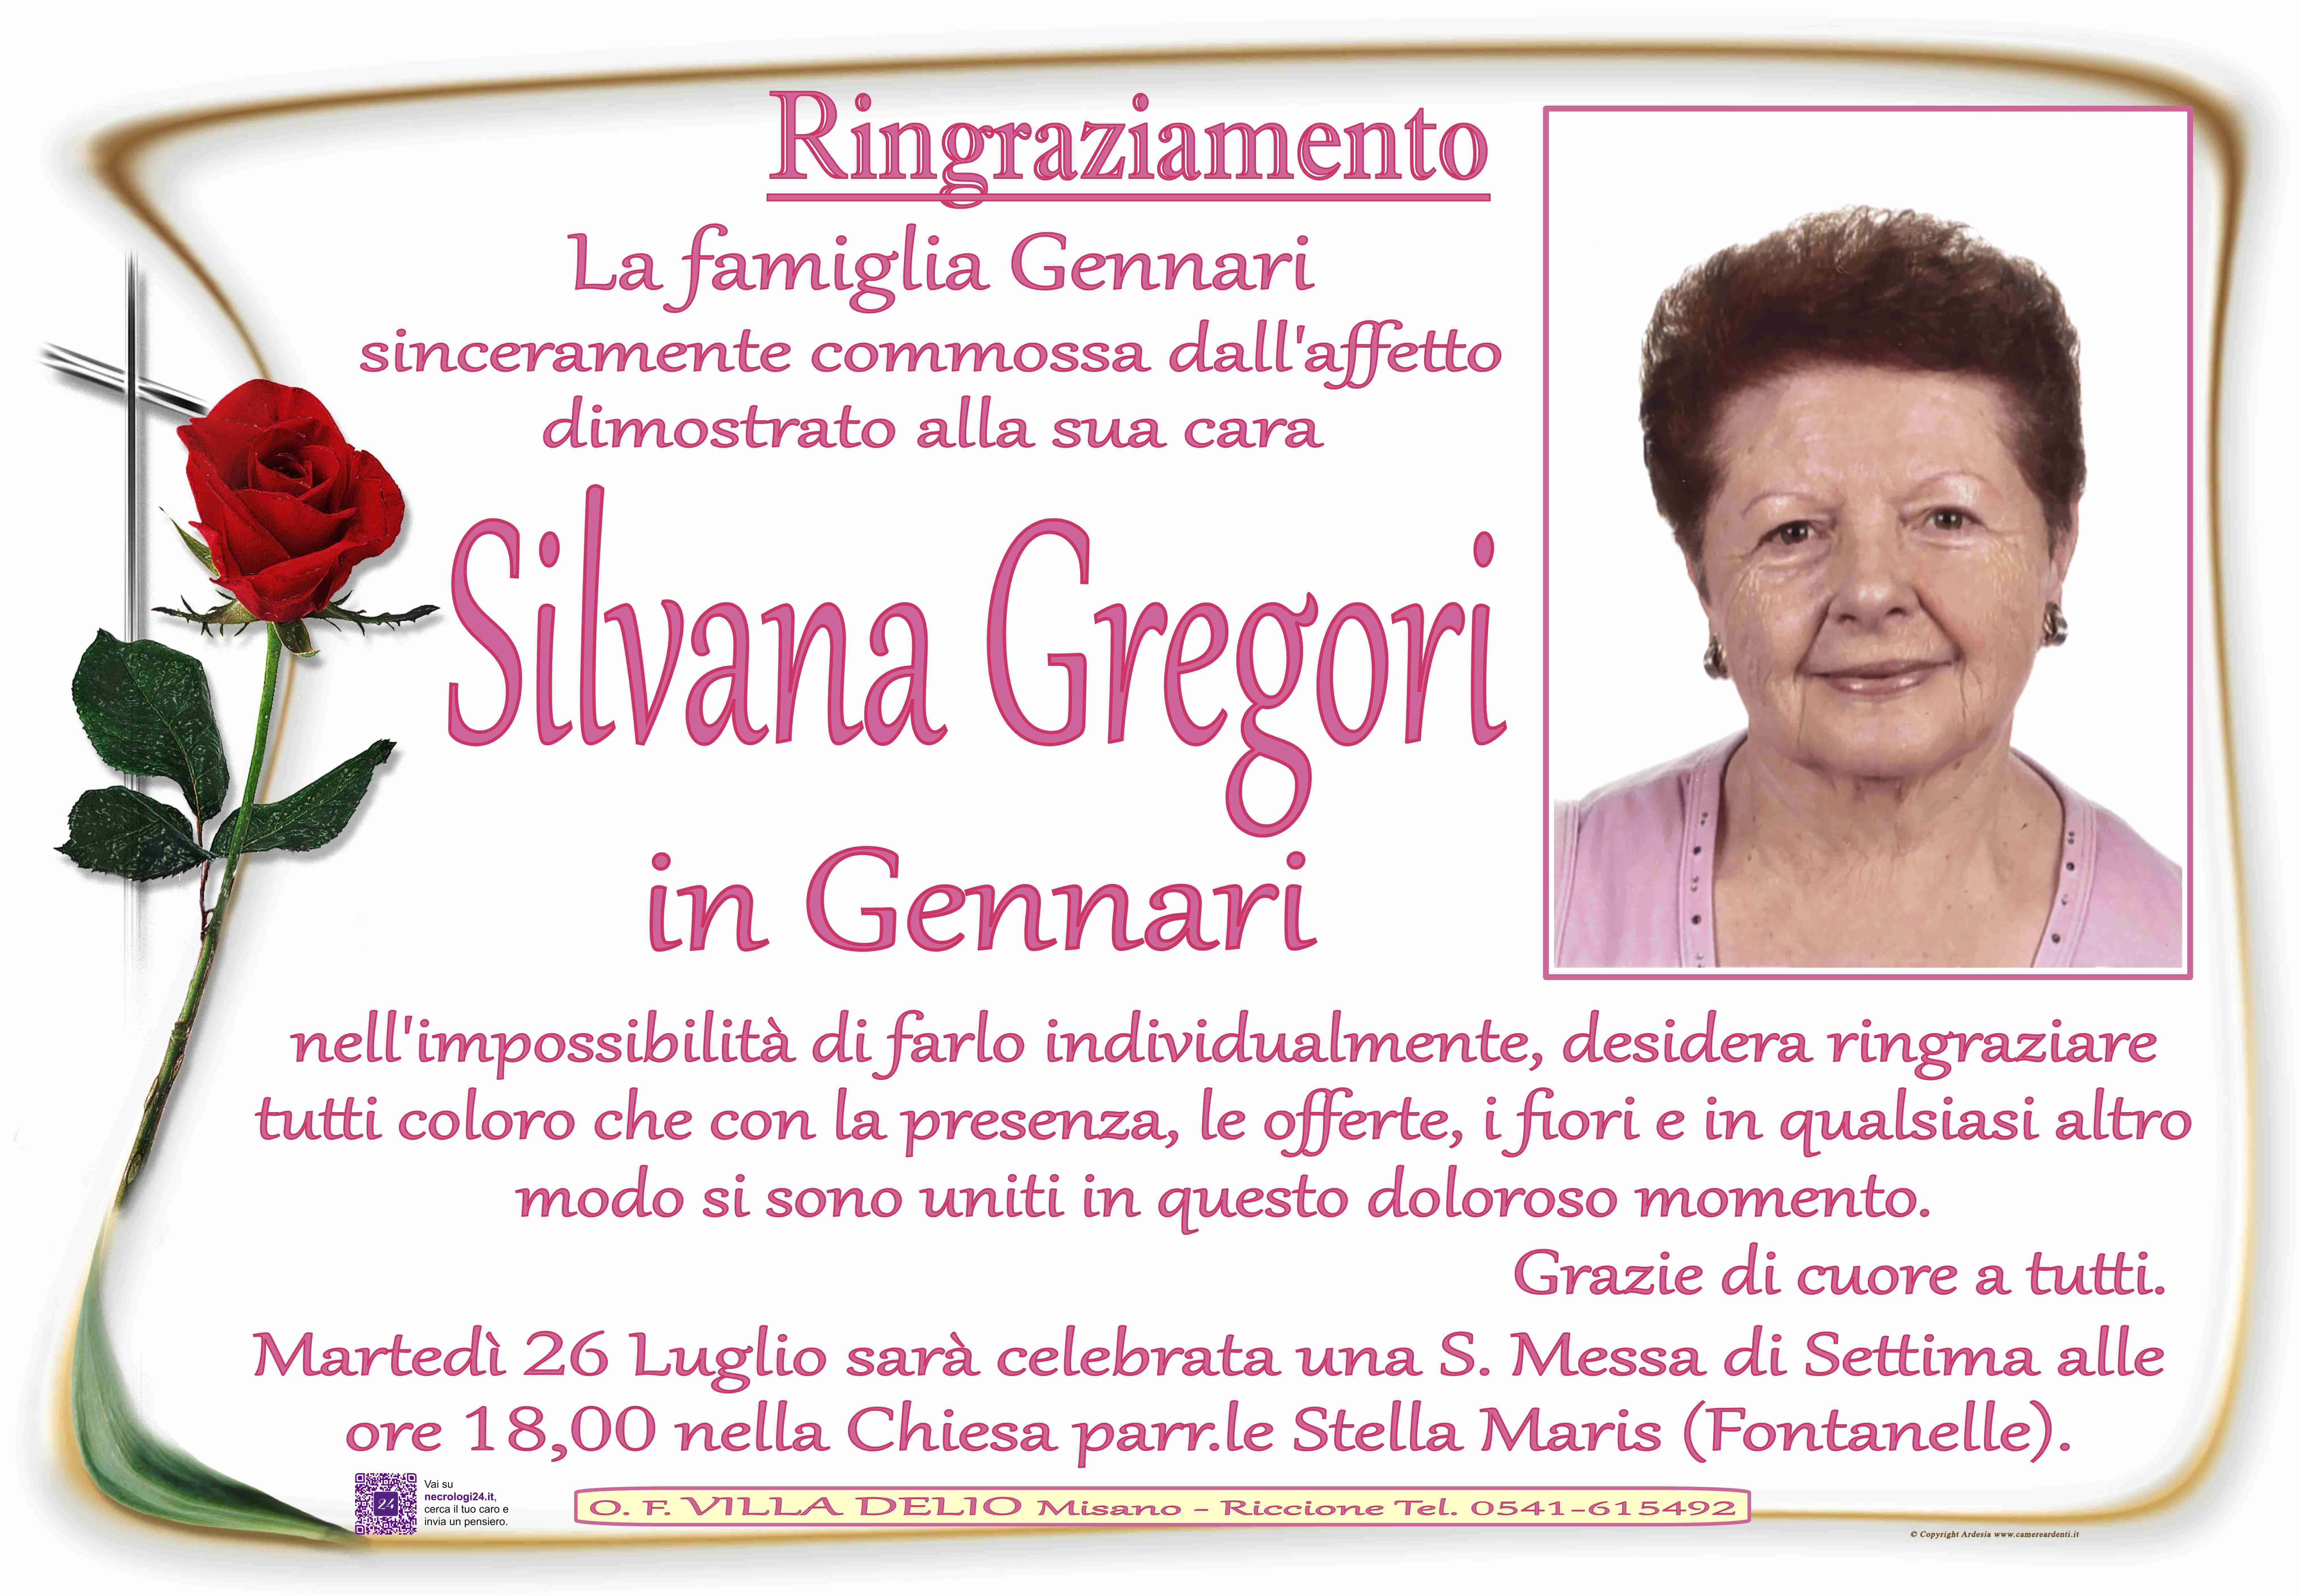 Silvana Gregori